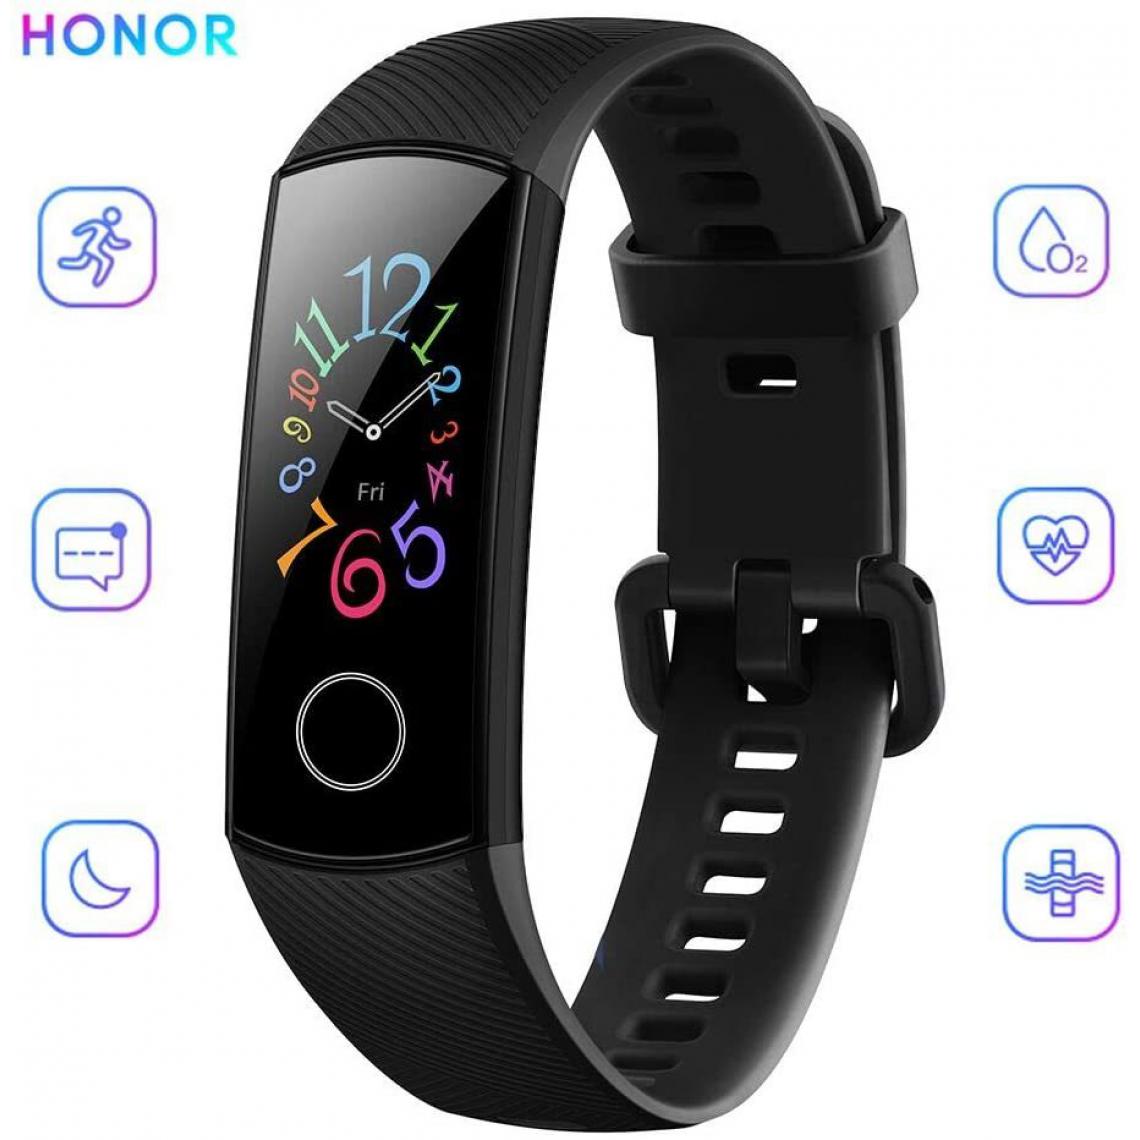 Chrono - Bracelet Connectée HONOR Band 5 pour Femme Homme Avec 5ATM Imperméable À l'eau pour Android iOS- Noir - Montre connectée